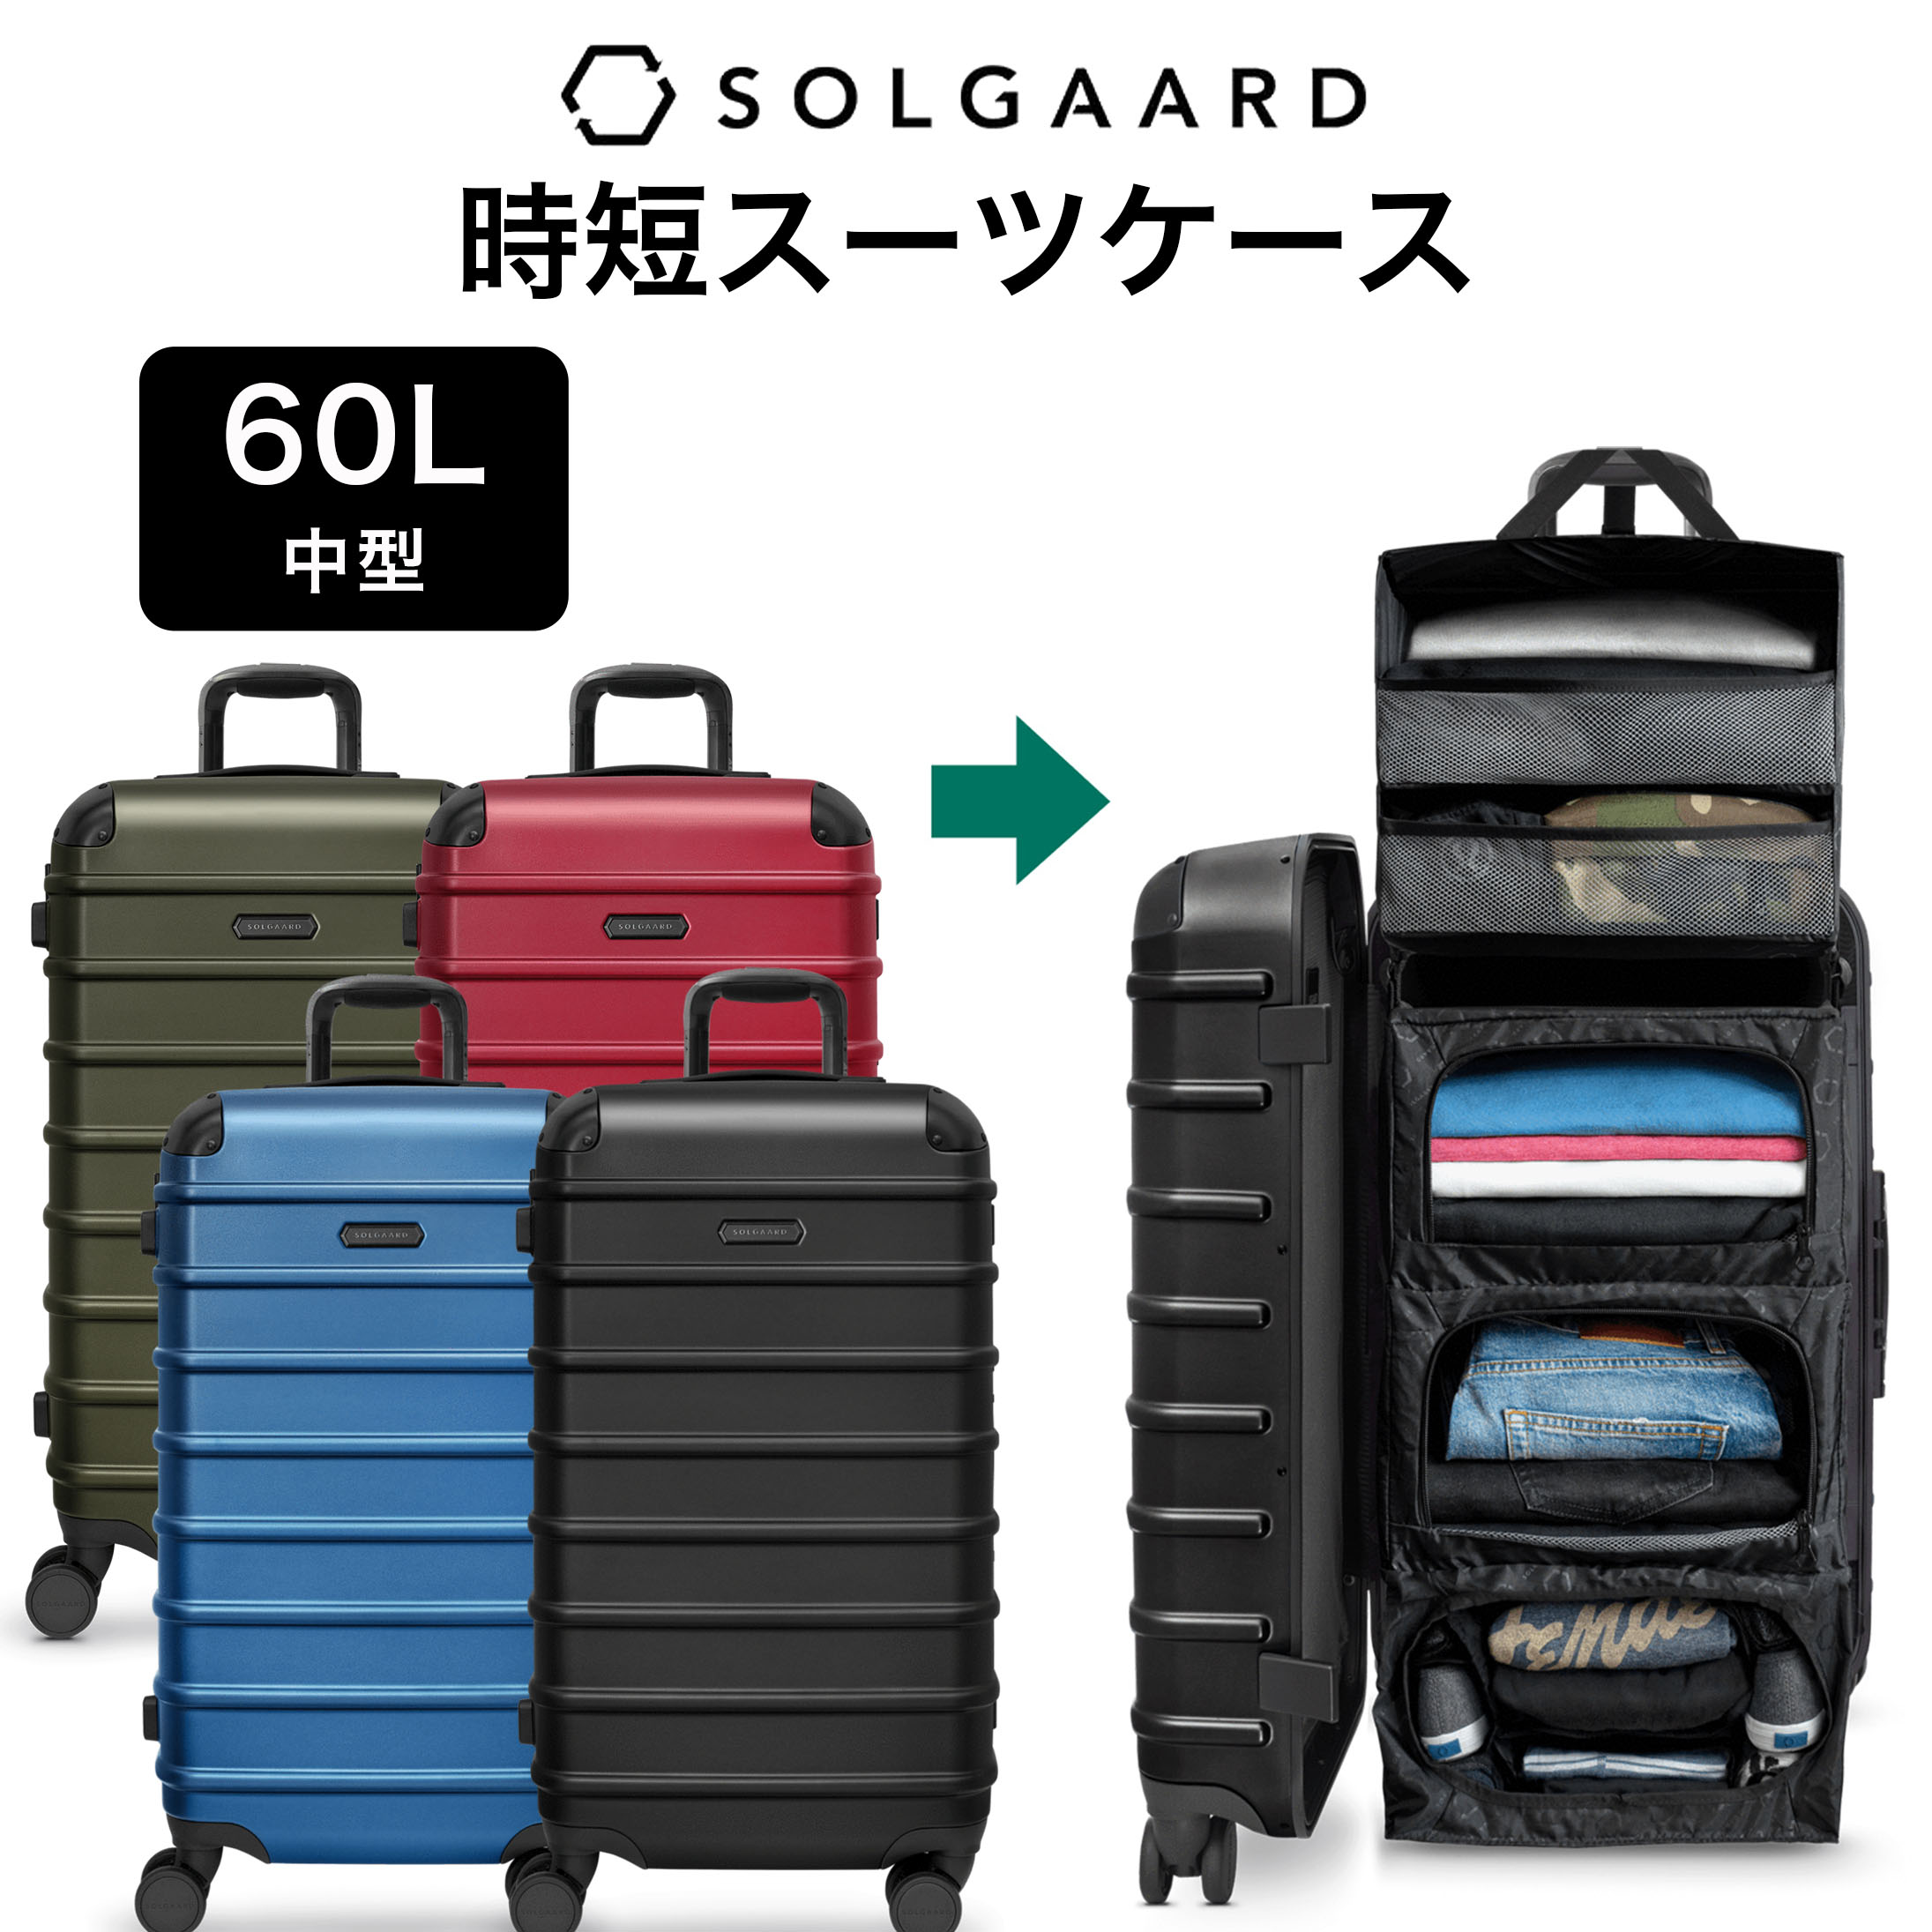 楽天市場 Solgaard Carry On 機内持ち込み 39l 時短スーツケース 正規店 送料無料 ブラック ブルー レッド グリーン キャリーケース 黒 青 赤 緑 パッキング 便利 機能的 新しい 機内持込 新発明 かっこいい ソルガード Escale